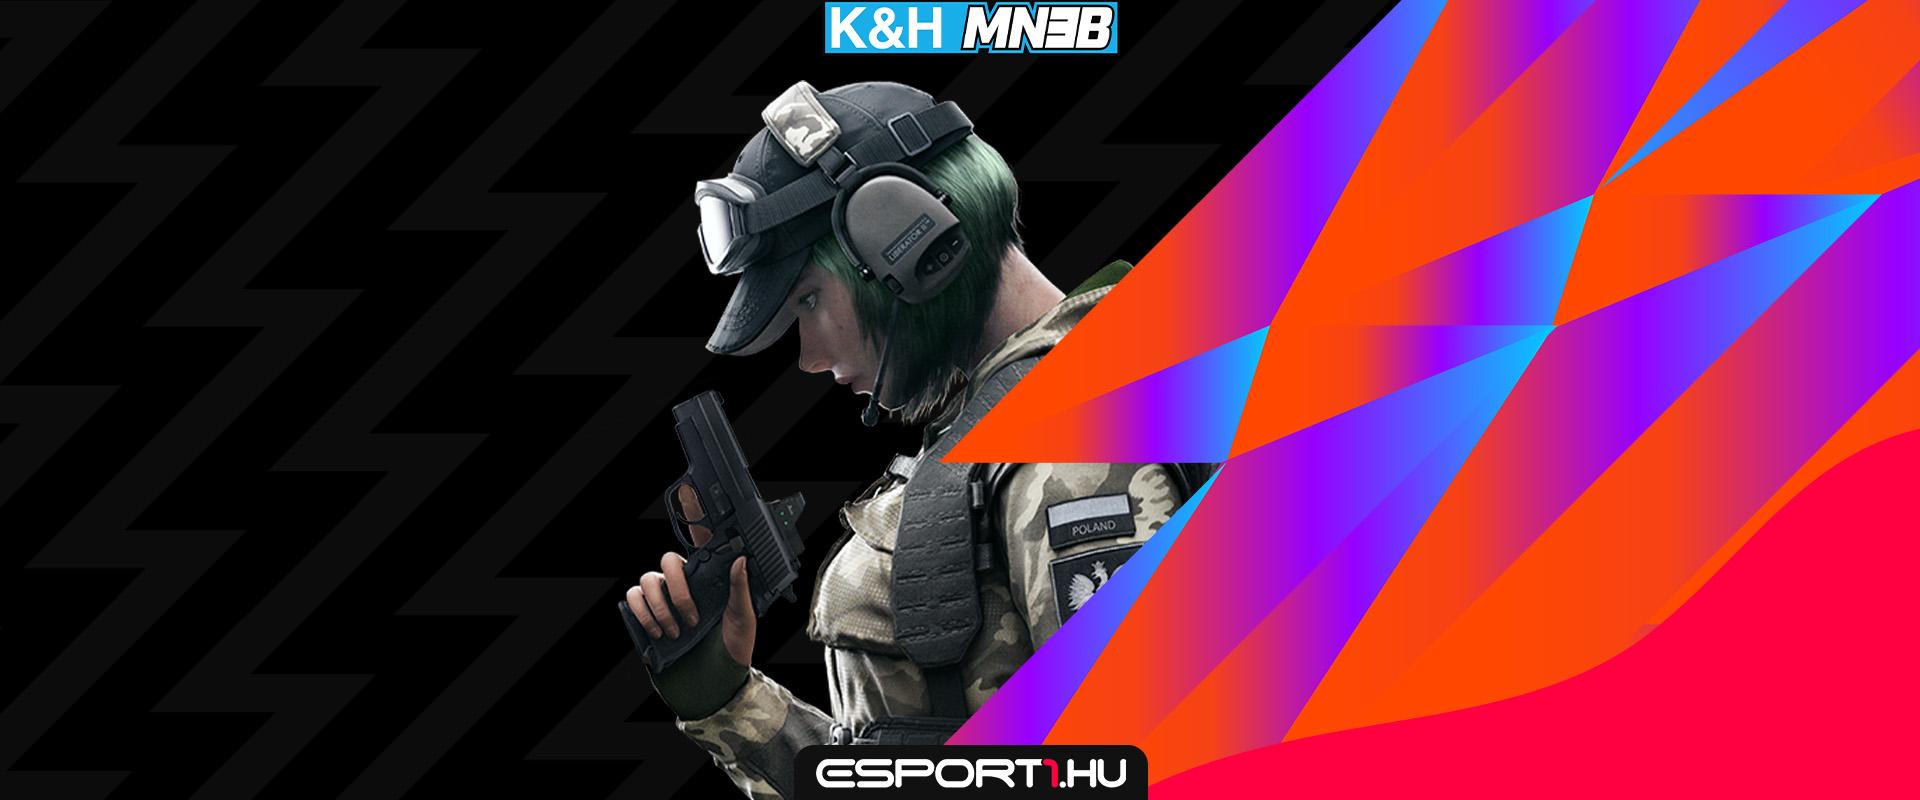 K&H MN3B R6S: A KMK mindent megpróbált a rájátszásért, de egy csapat kifogott rajtuk